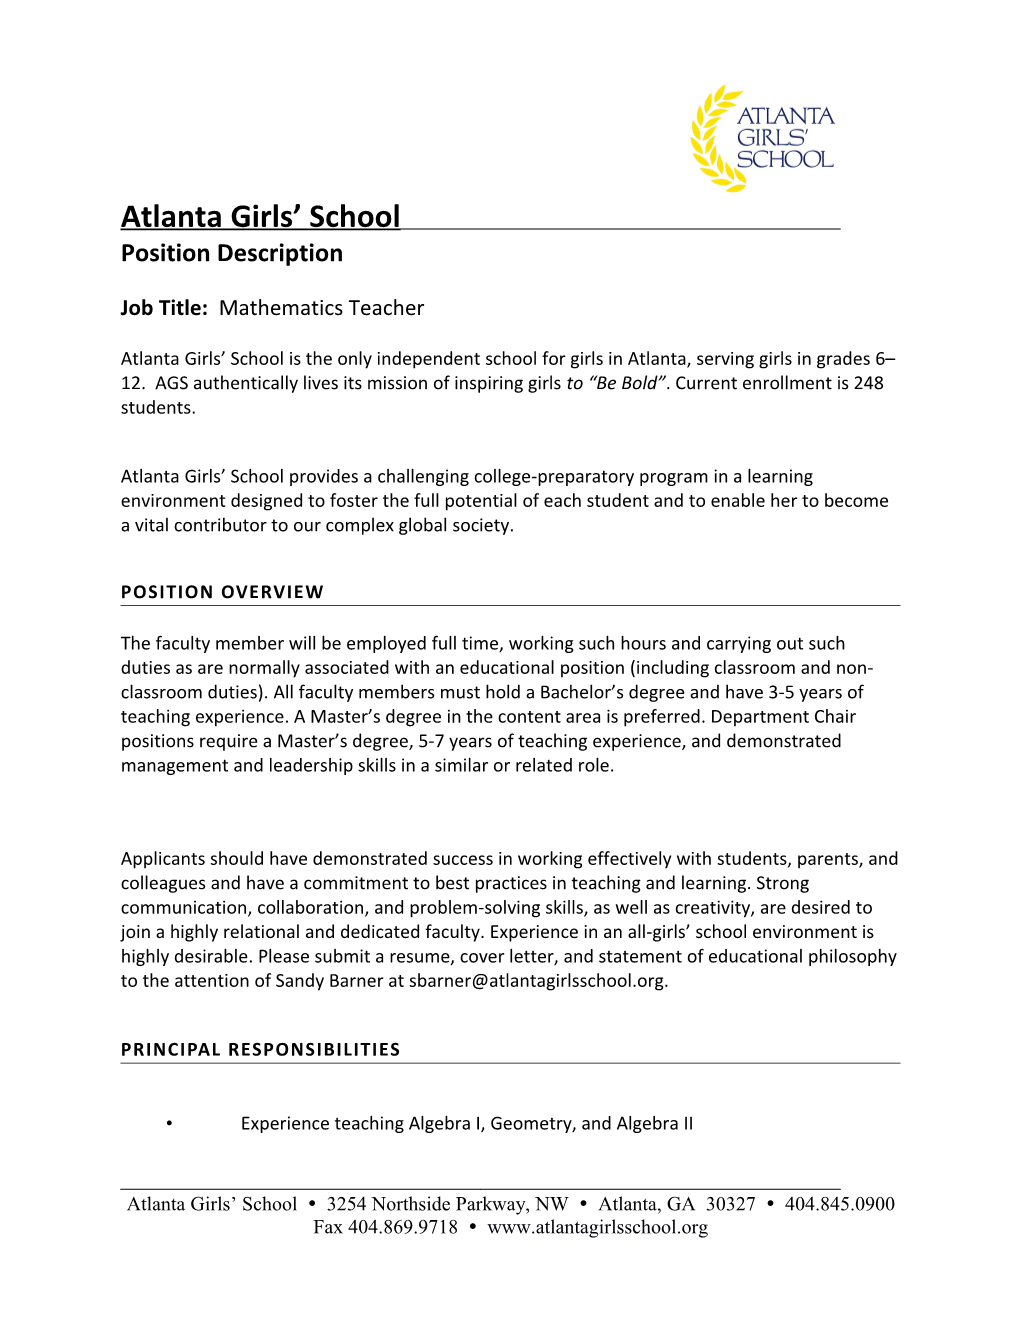 Atlanta Girls School